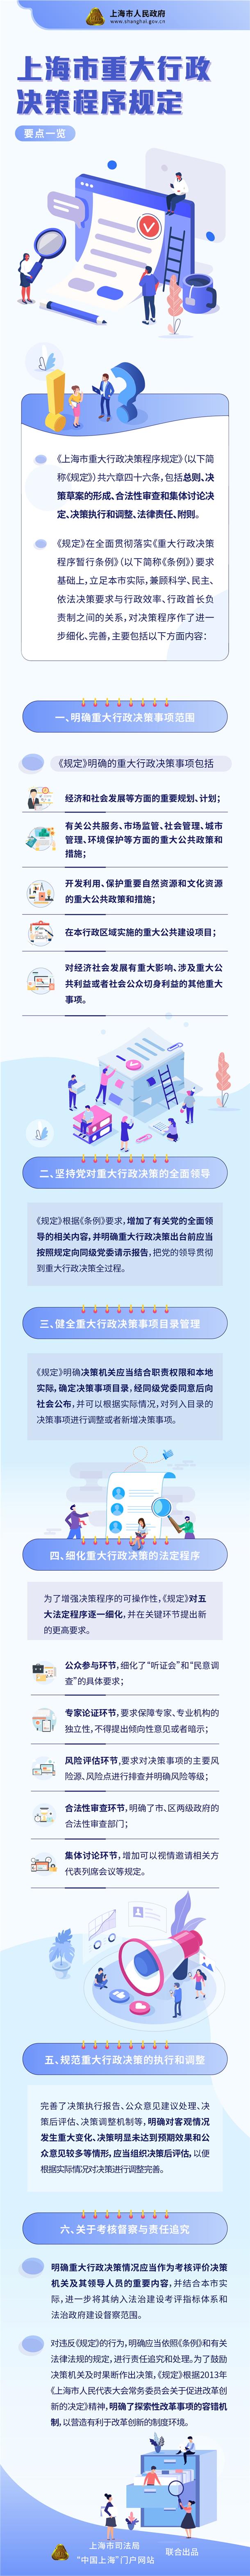 上海市重大行政決策程式規定